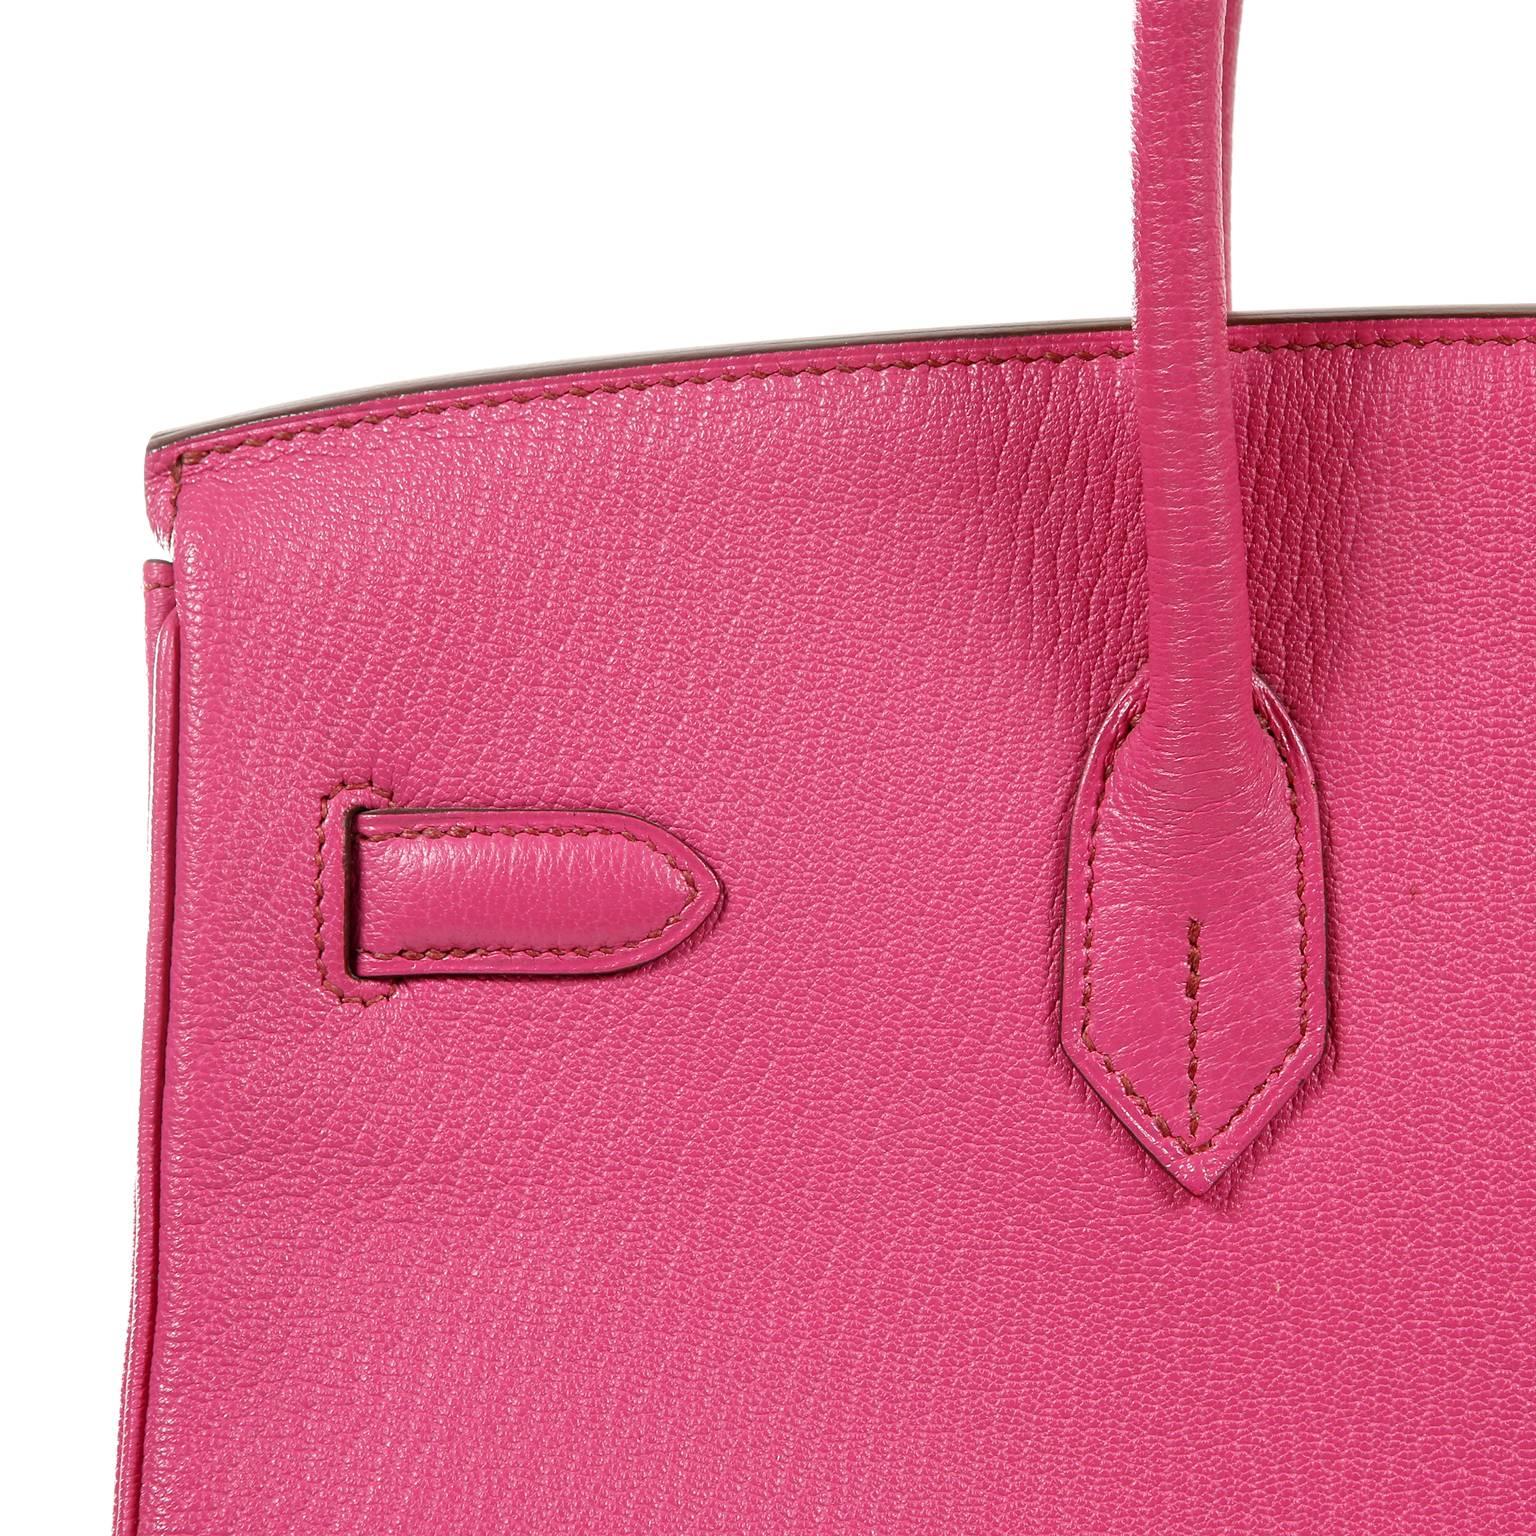 Hermès Rose Shocking Chevre 35 cm Birkin Bag- Palladium HW 10